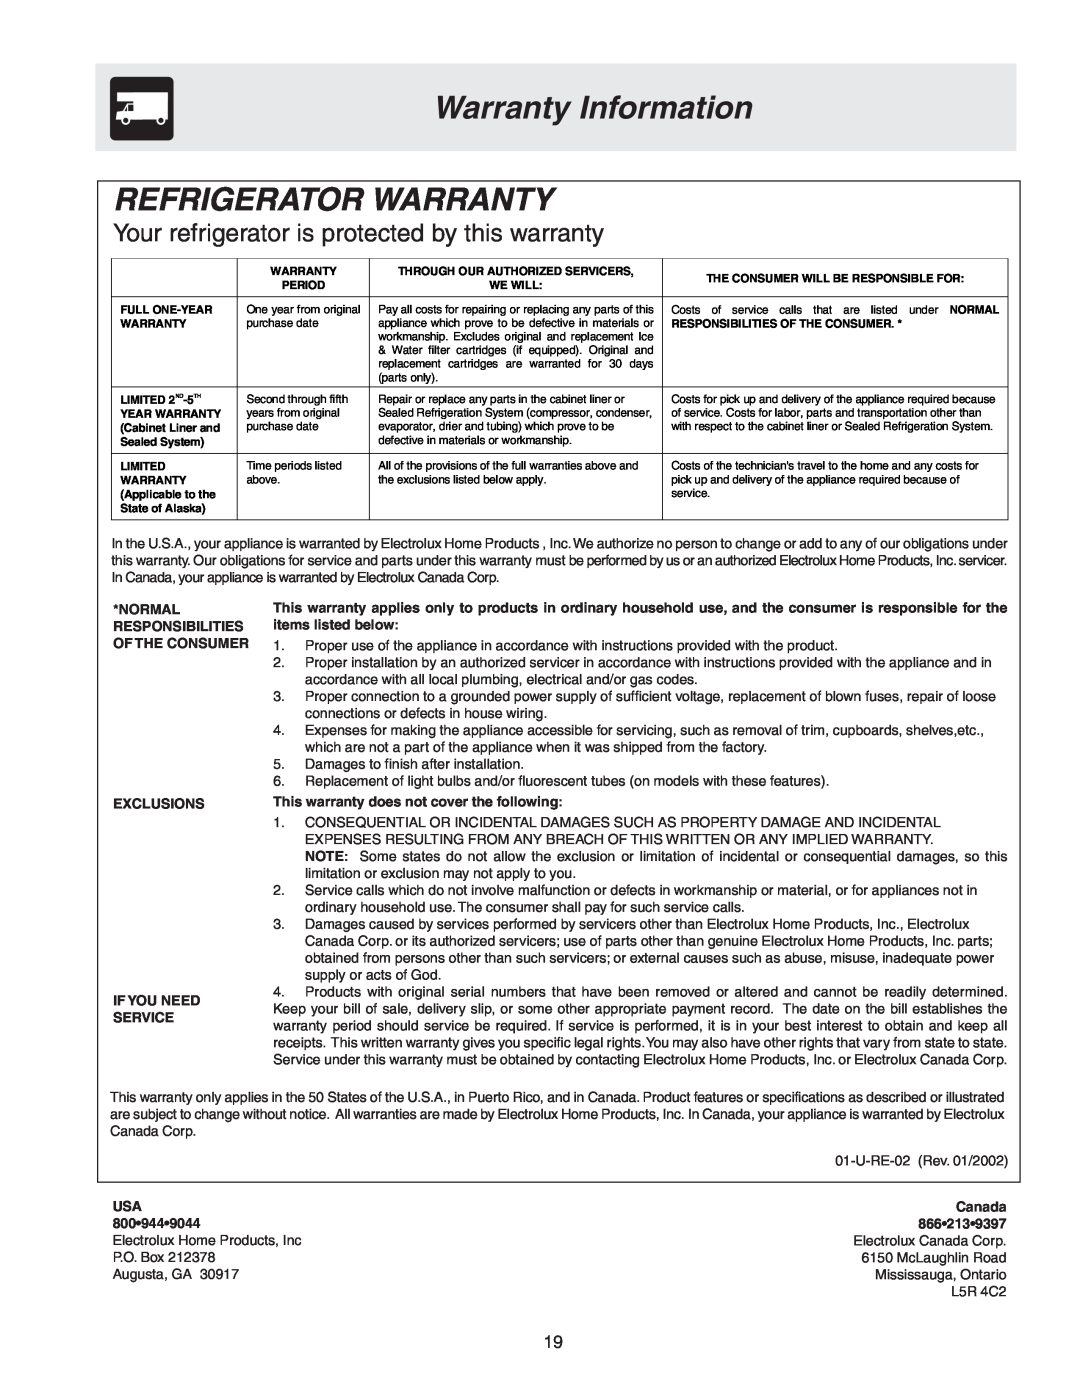 Frigidaire 241567600 warranty Warranty Information, Refrigerator Warranty, Normal Responsibilities Of The Consumer, Canada 